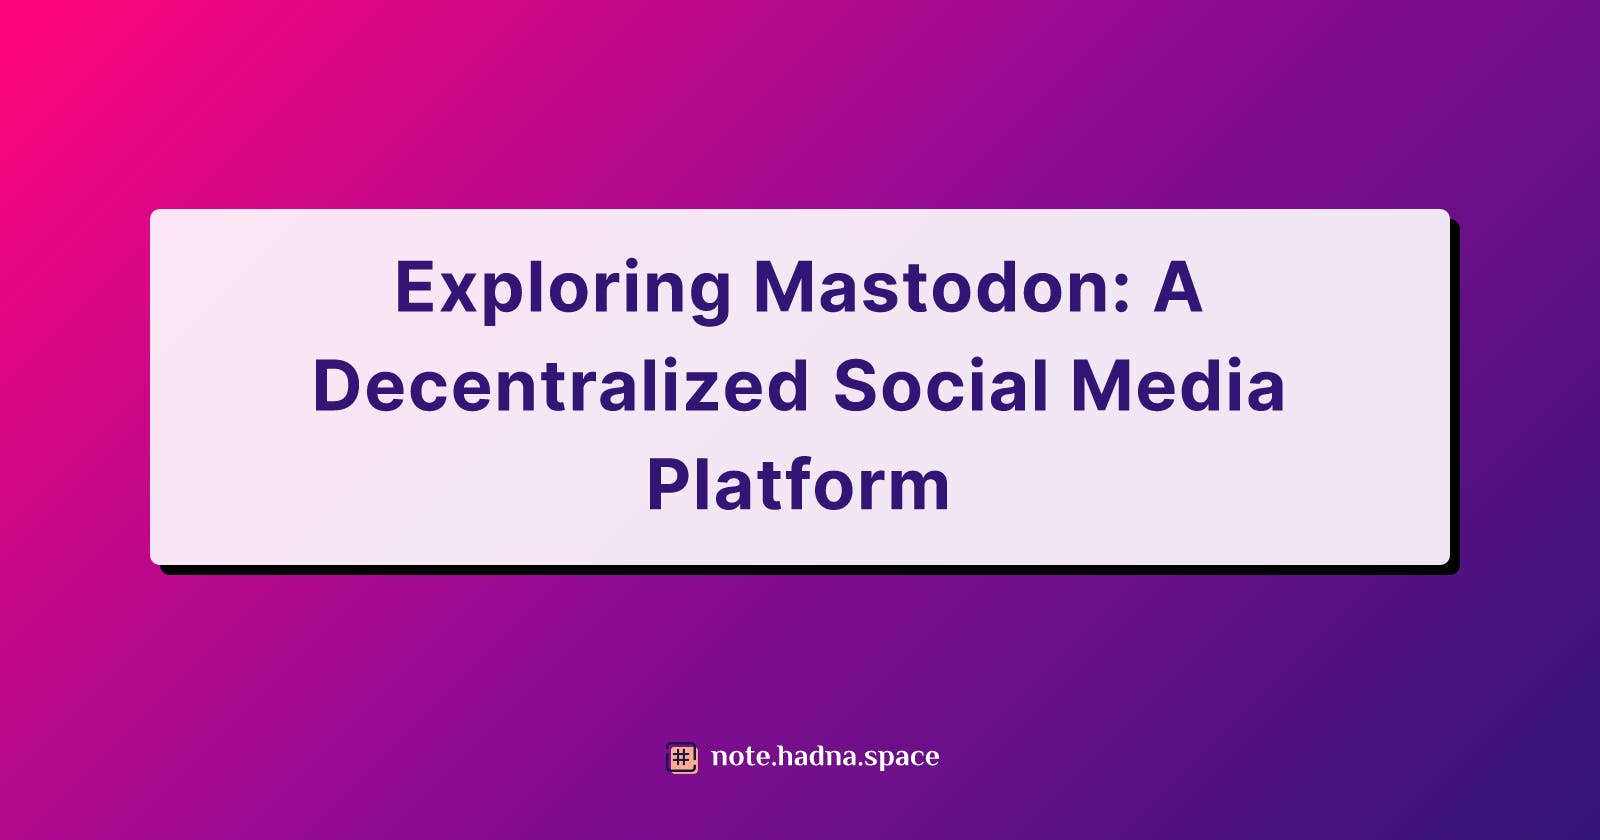 Exploring Mastodon: A Decentralized Social Media Platform